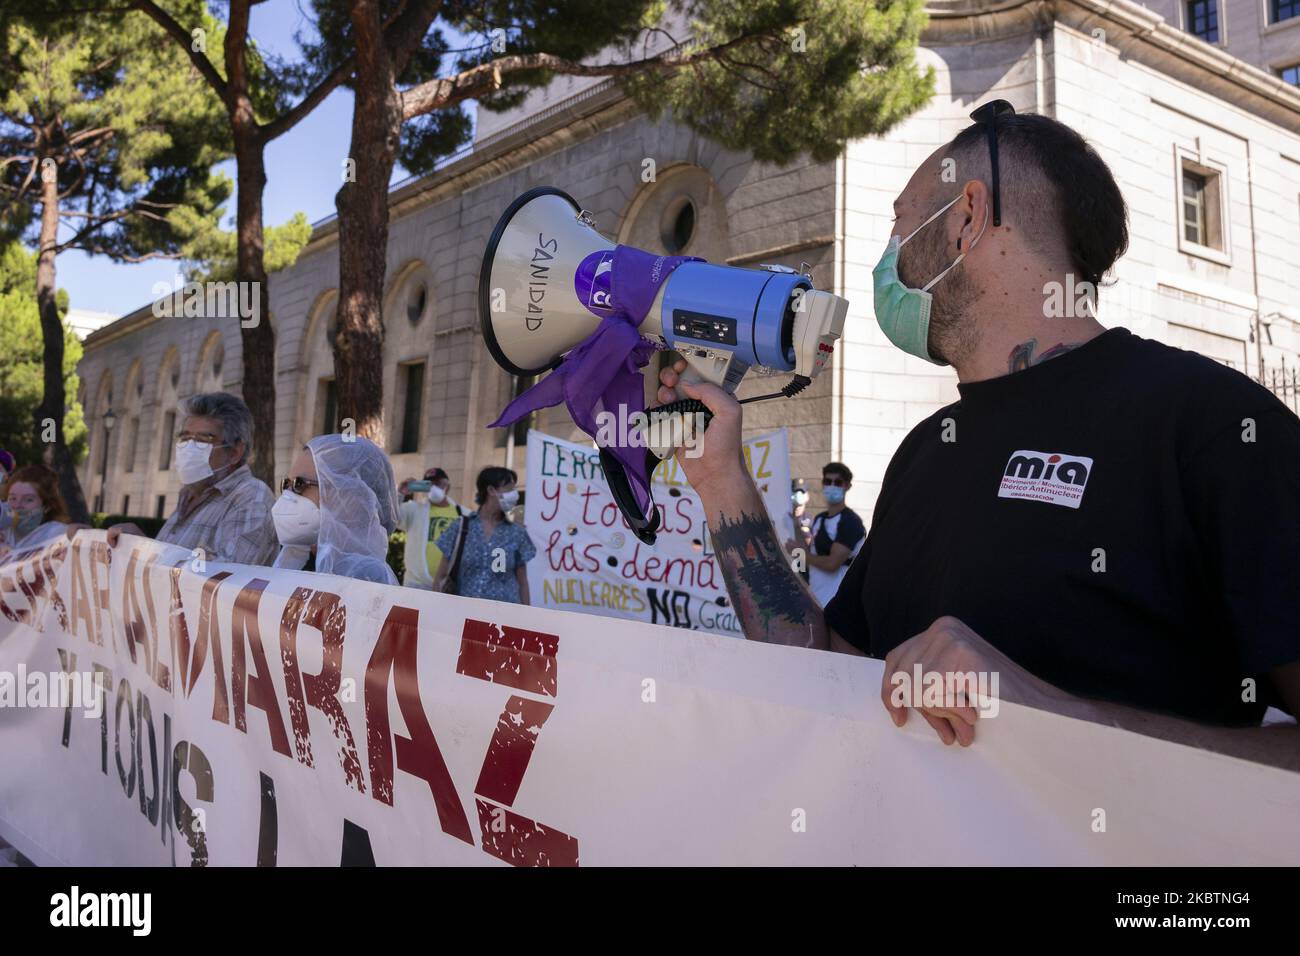 Un groupe de personnes du mouvement antinucléaire ibérique se réunit devant le Ministère de la transition écologique à Madrid, en Espagne, sur 16 juillet 2020 pour demander la fermeture des centrales nucléaires espagnoles. (Photo par Oscar Gonzalez/NurPhoto) Banque D'Images